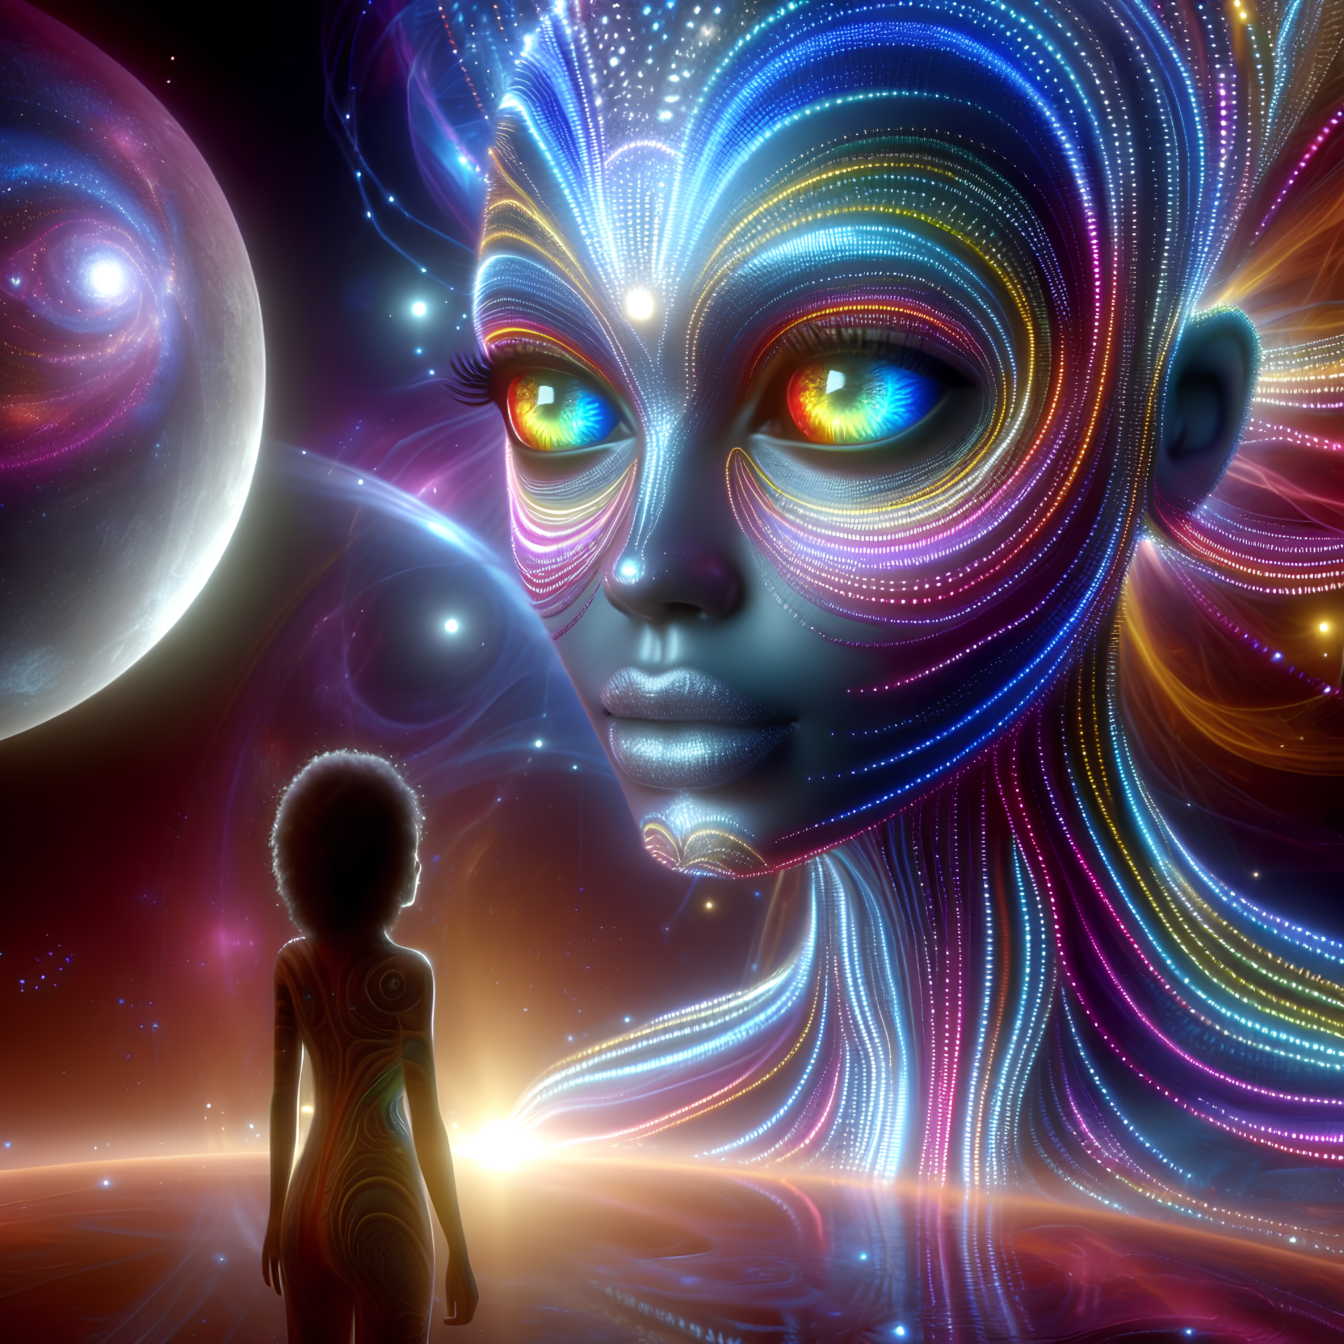 Transferência espiritual de energia astrológica extraterrestre do cosmos através da hipnose de cura quântica